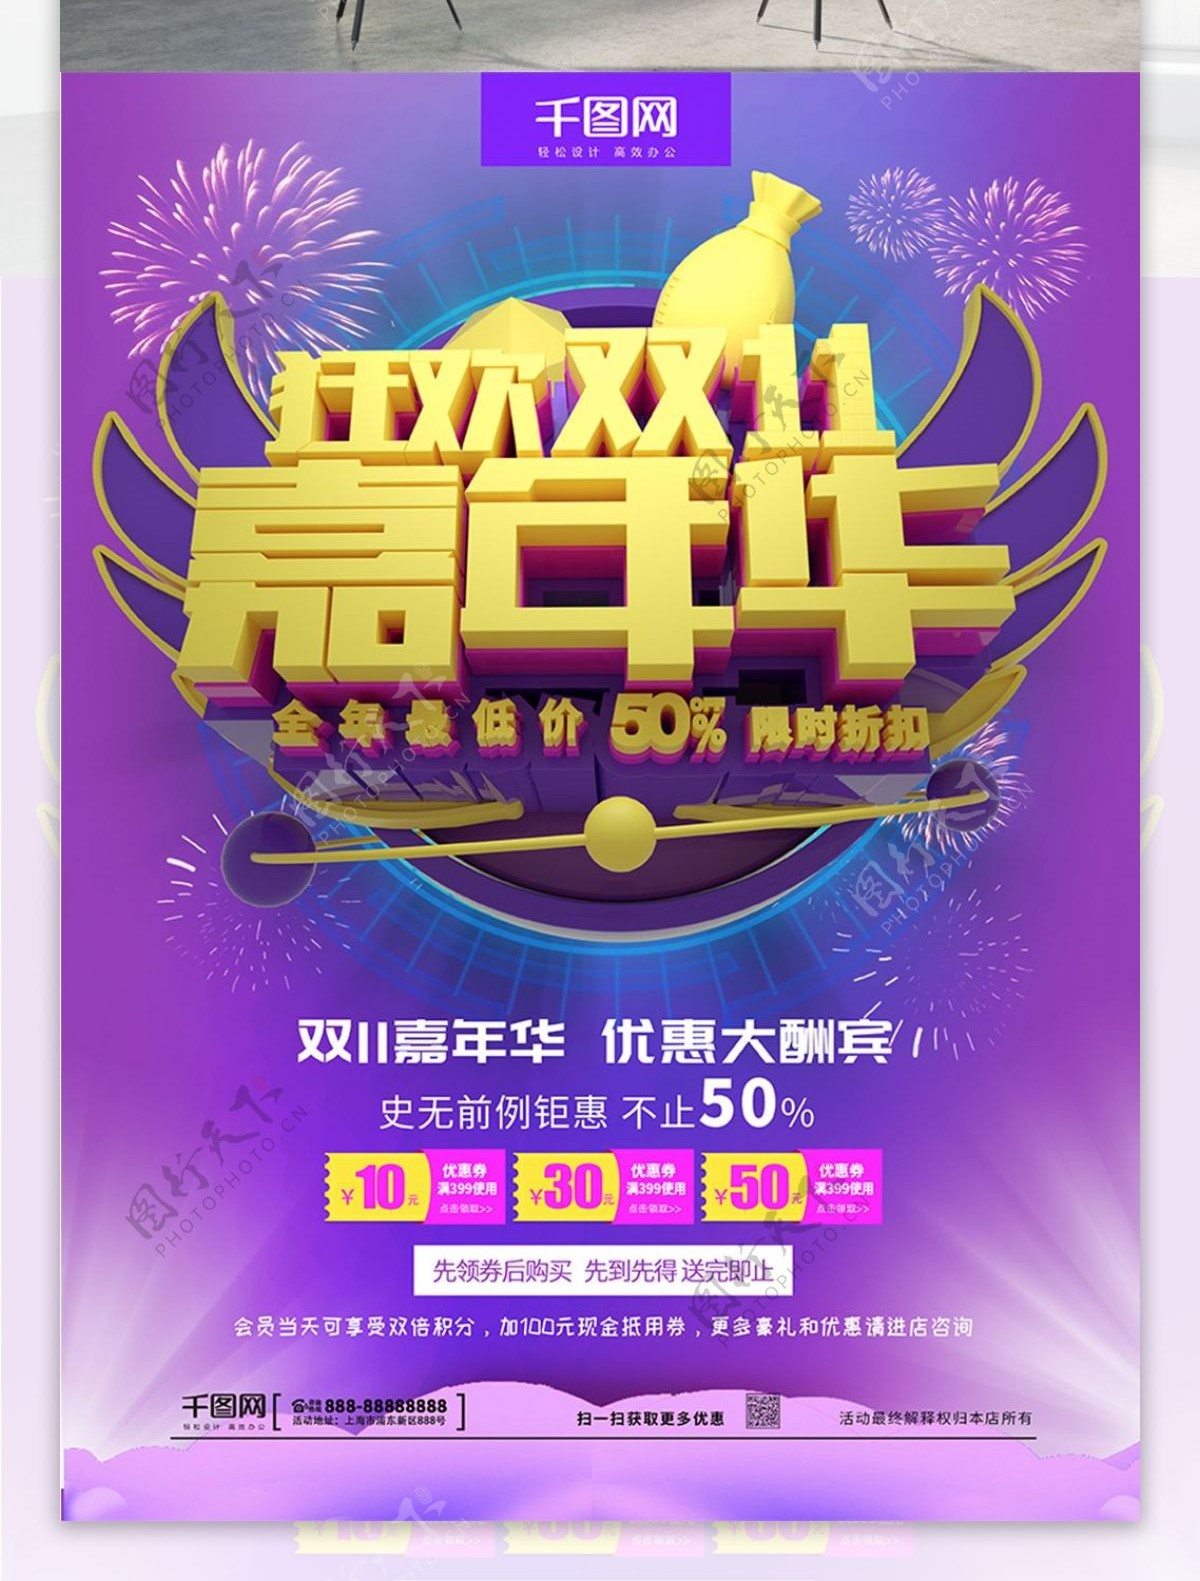 C4D紫色狂欢双11嘉年华双11促销海报